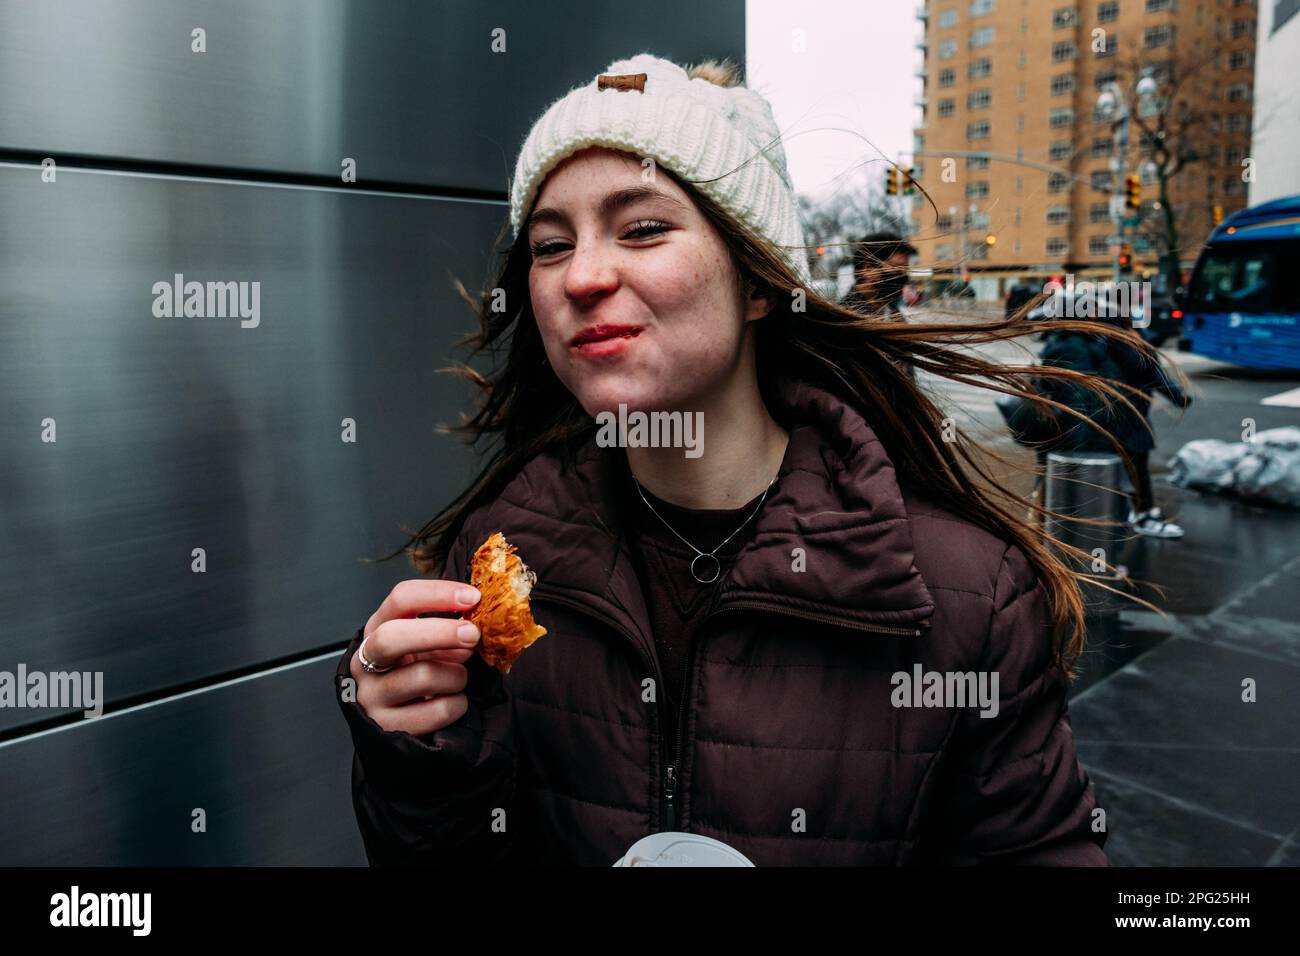 Ragazza teen che mangia il pane sull'angolo della strada Foto Stock